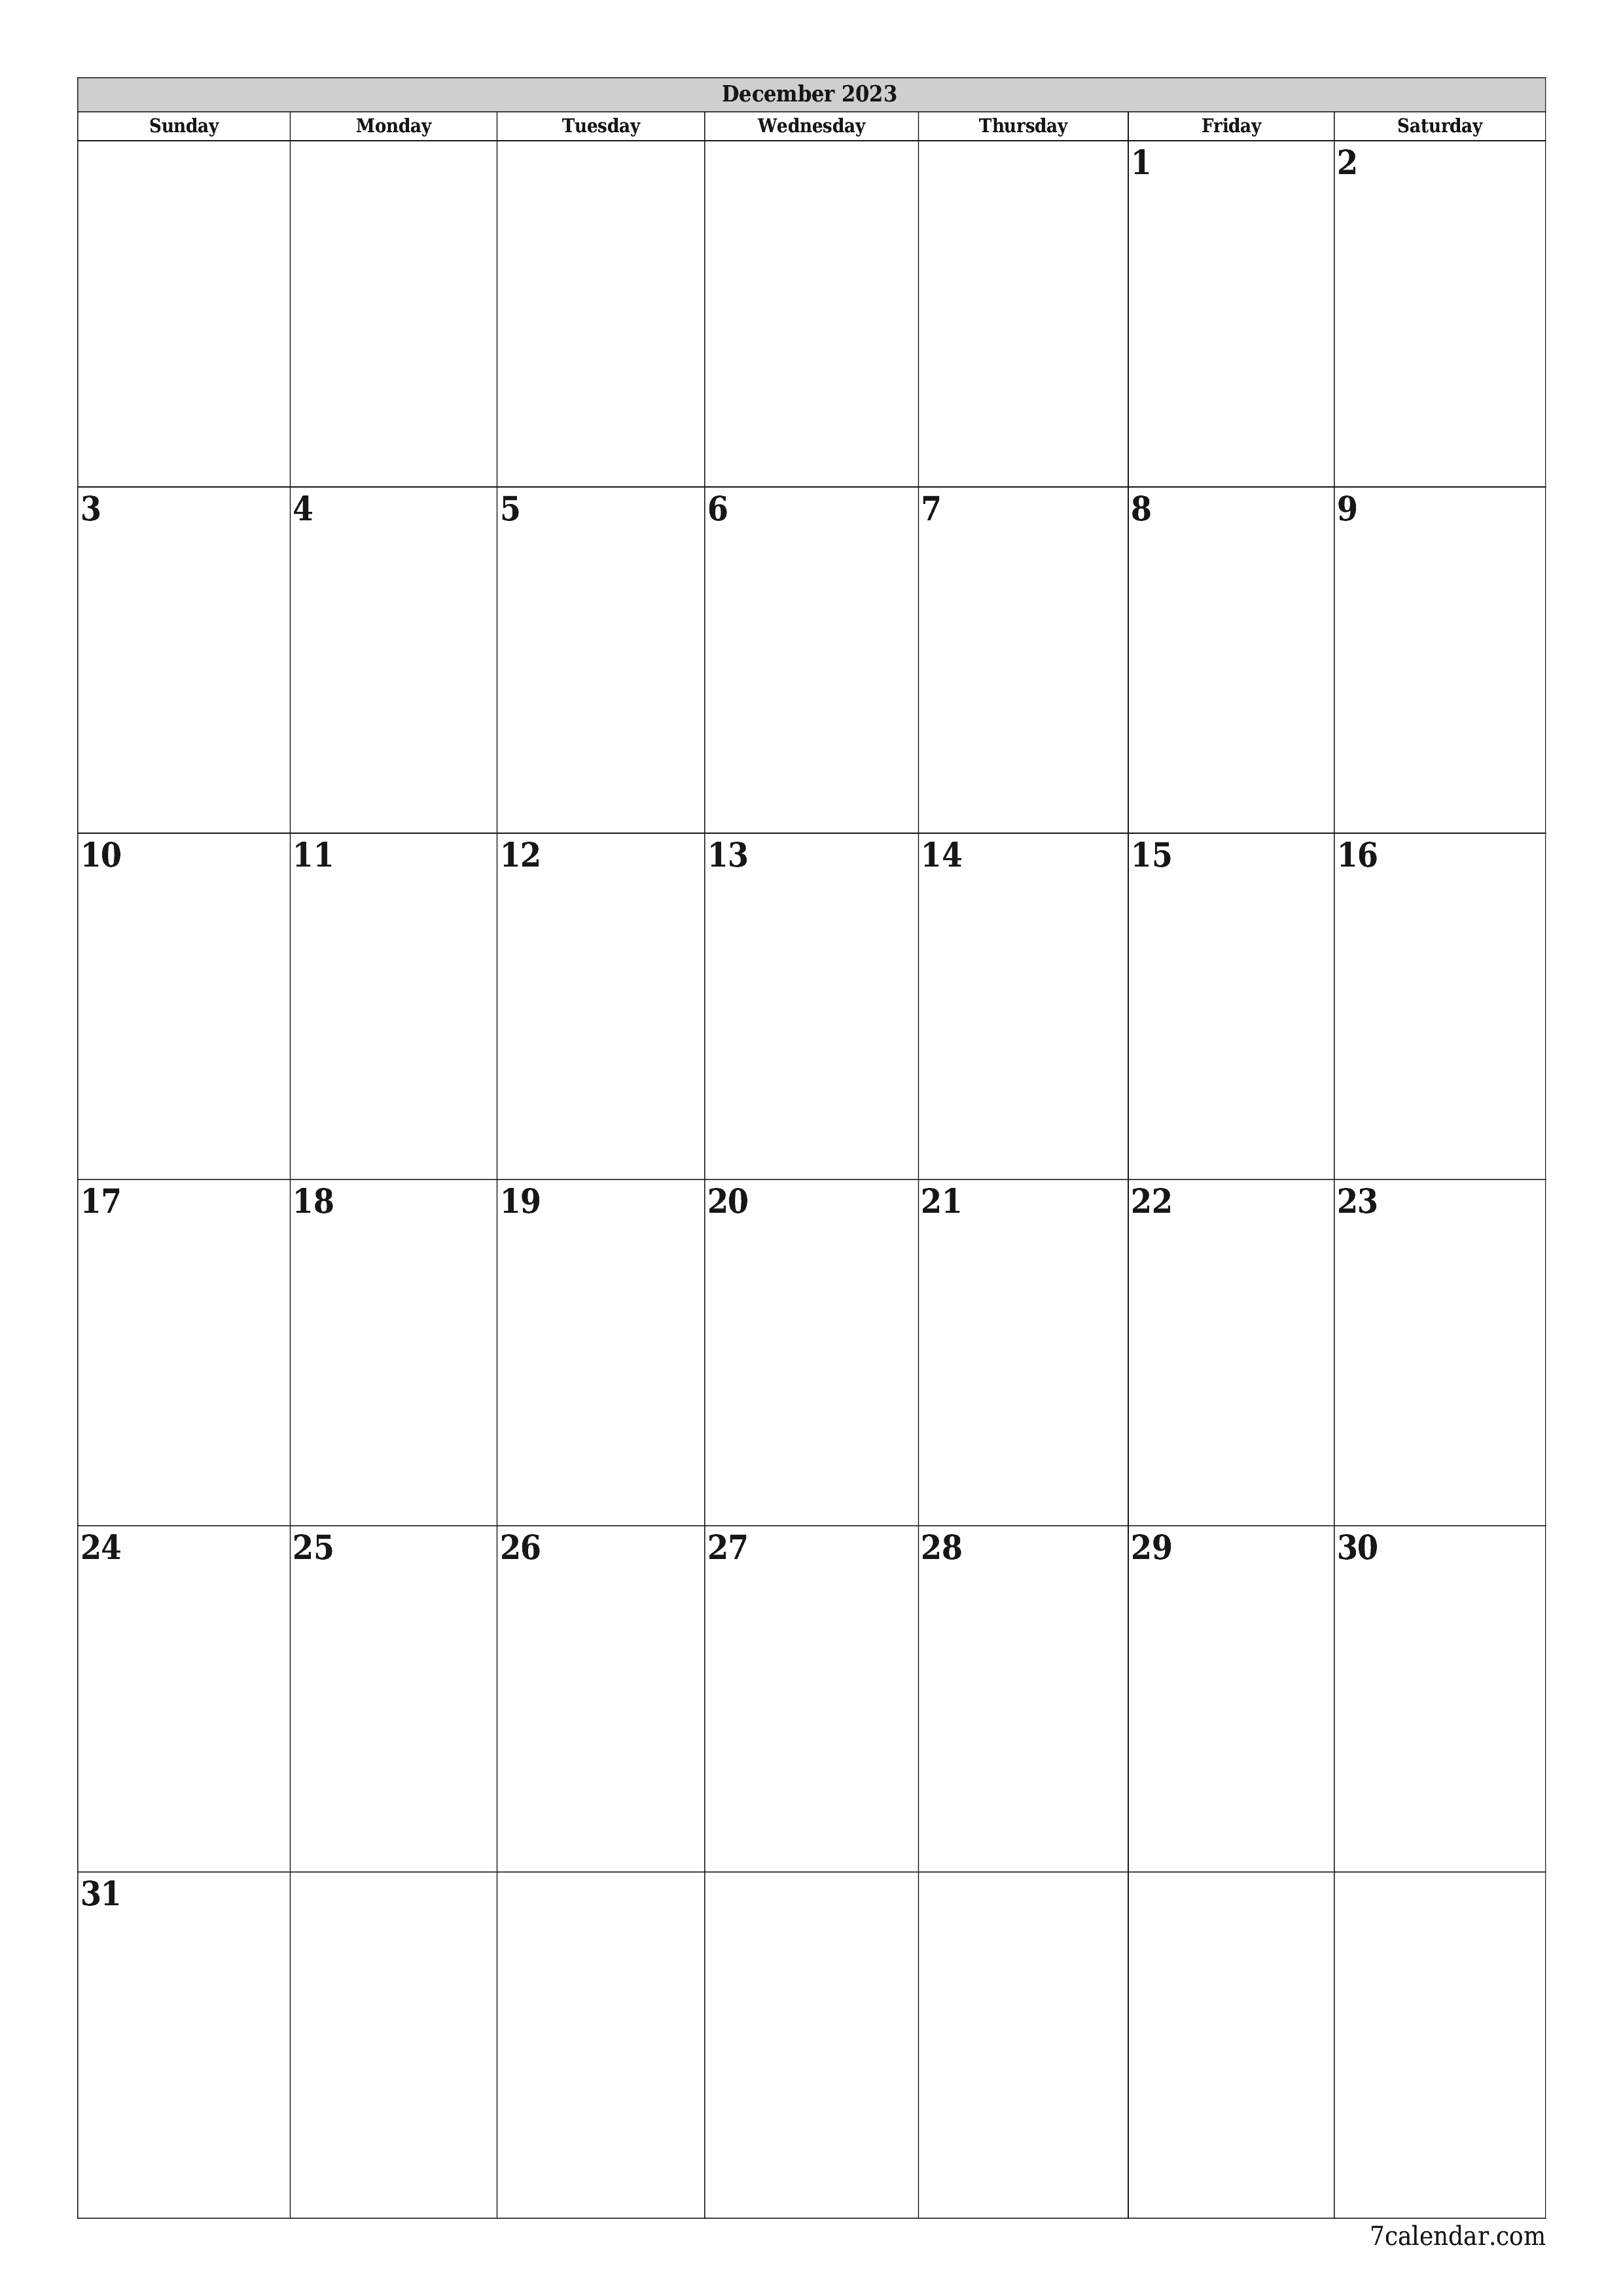 Blank calendar December 2023